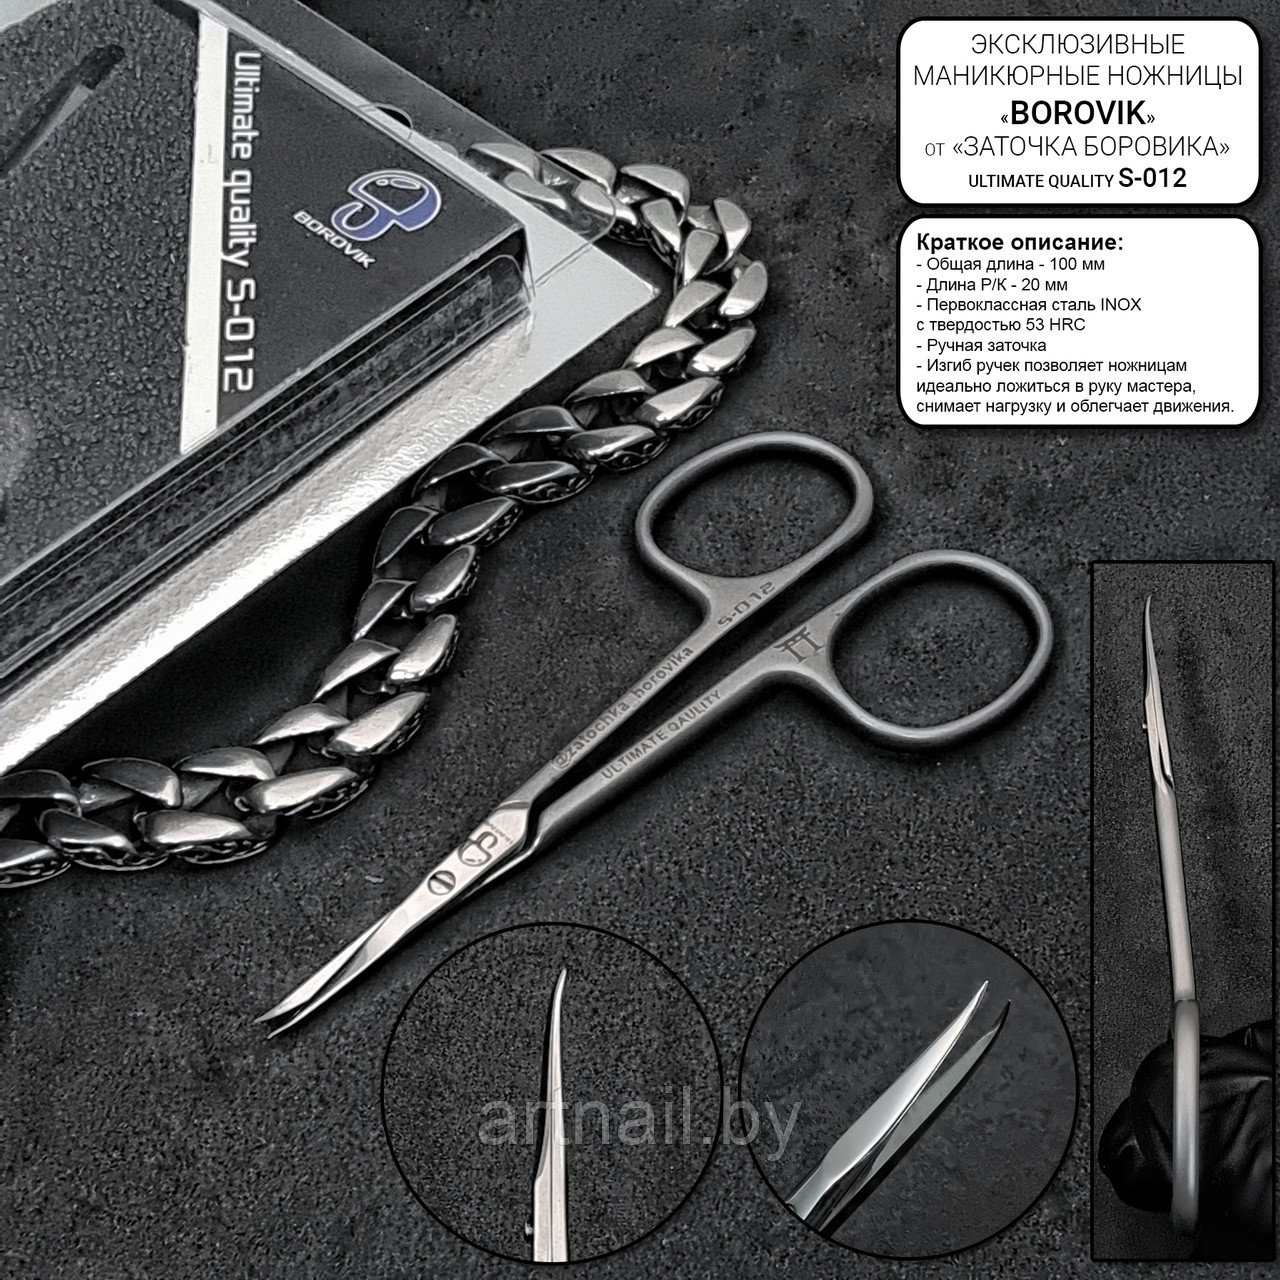 Ножницы маникюрные для кутикулы "Заточка Боровика" SERIES S-012 Ultimate Quality (загнутый кончик)